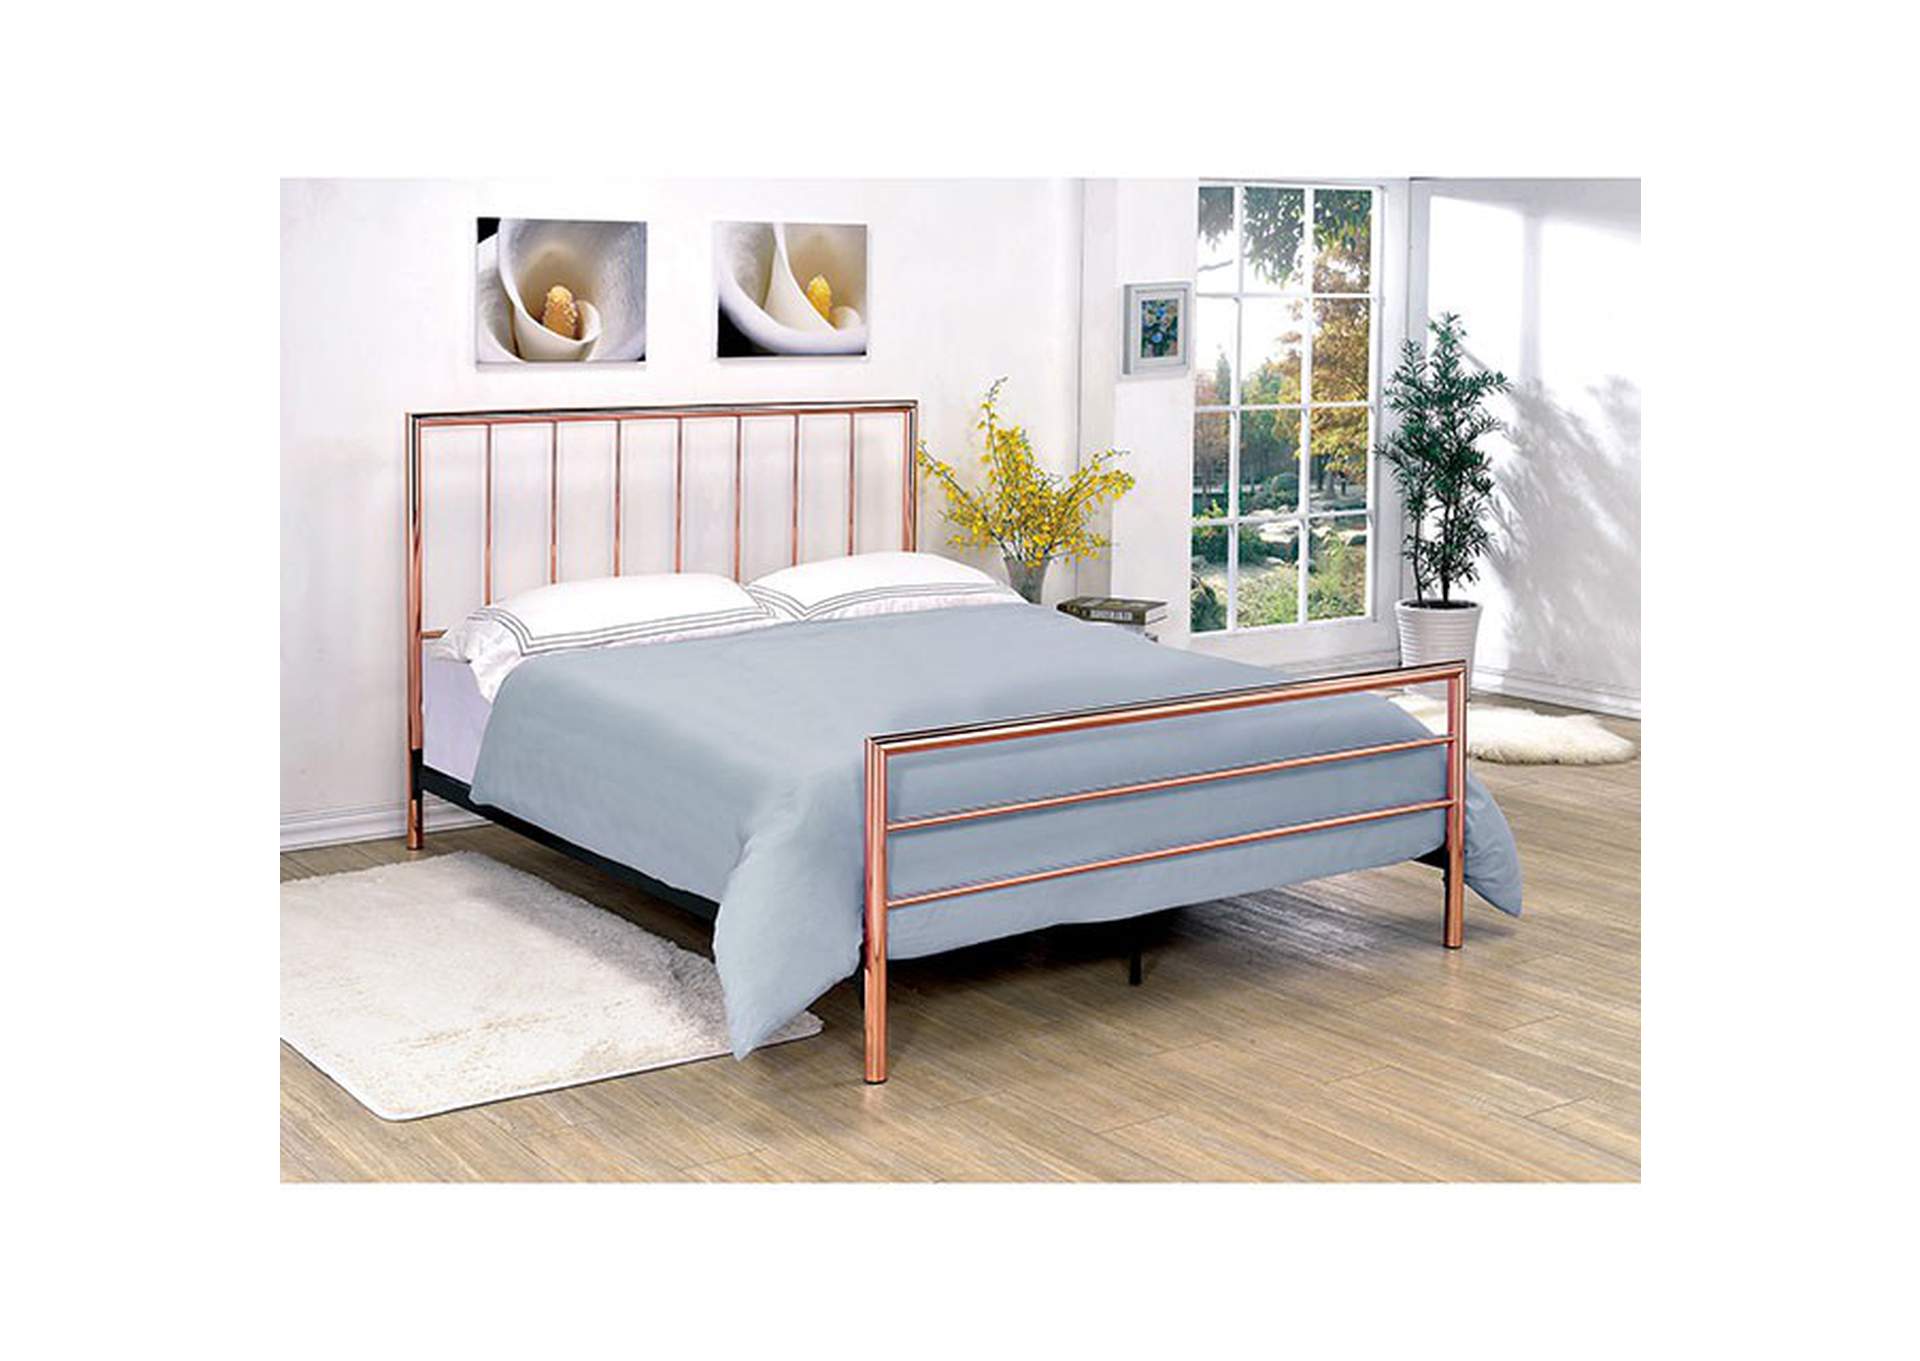 Diana Queen Bed K Custom Furniture, Diana Queen Upholstered Bed